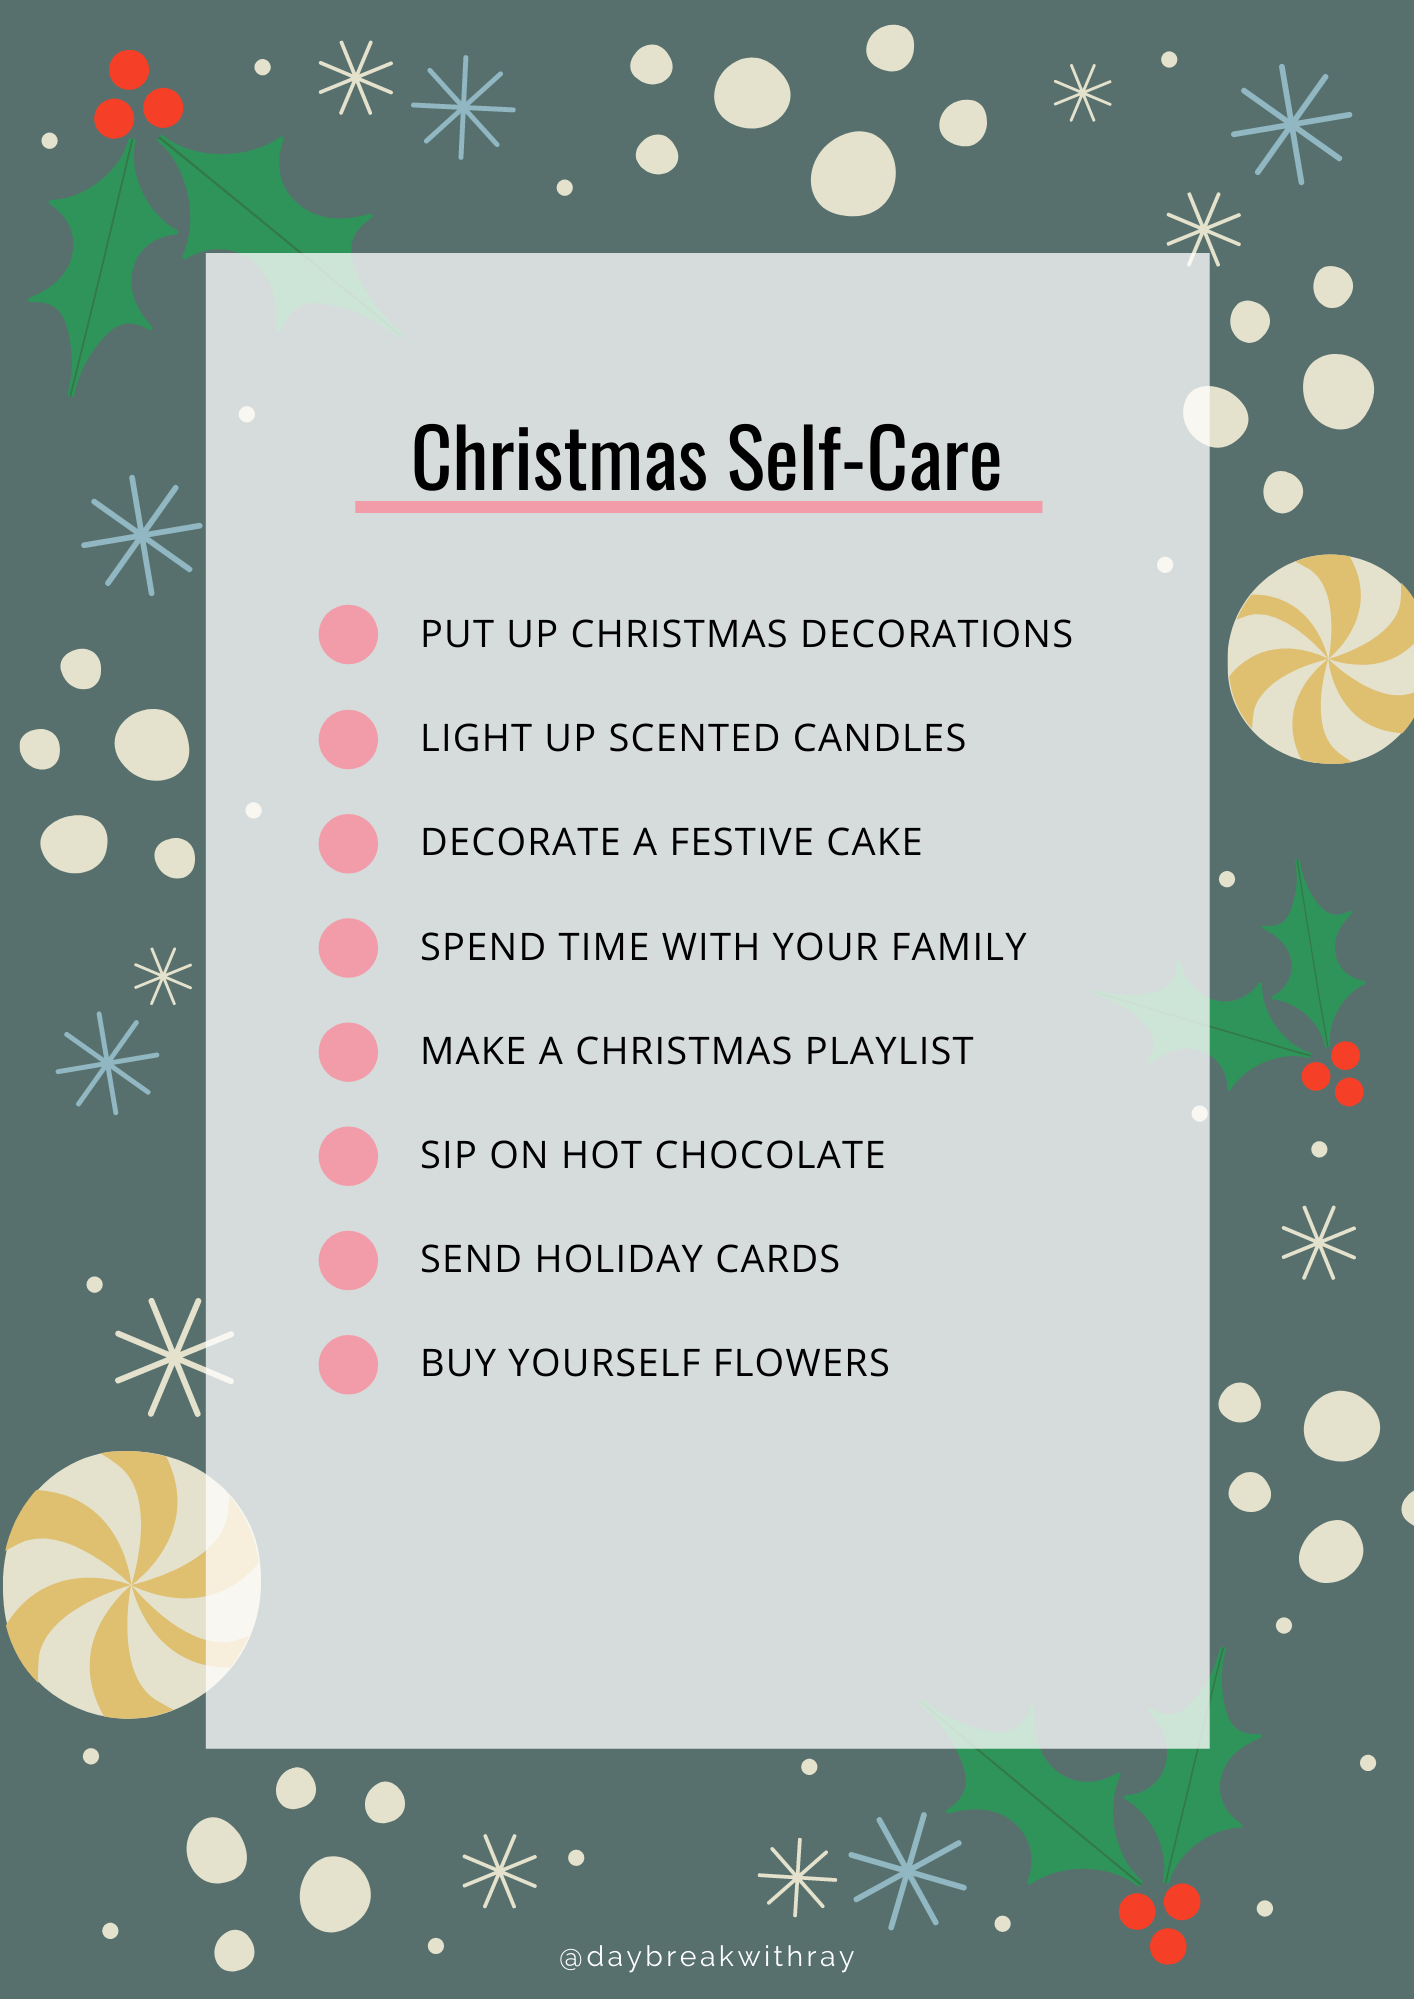 Christmas Self-Care